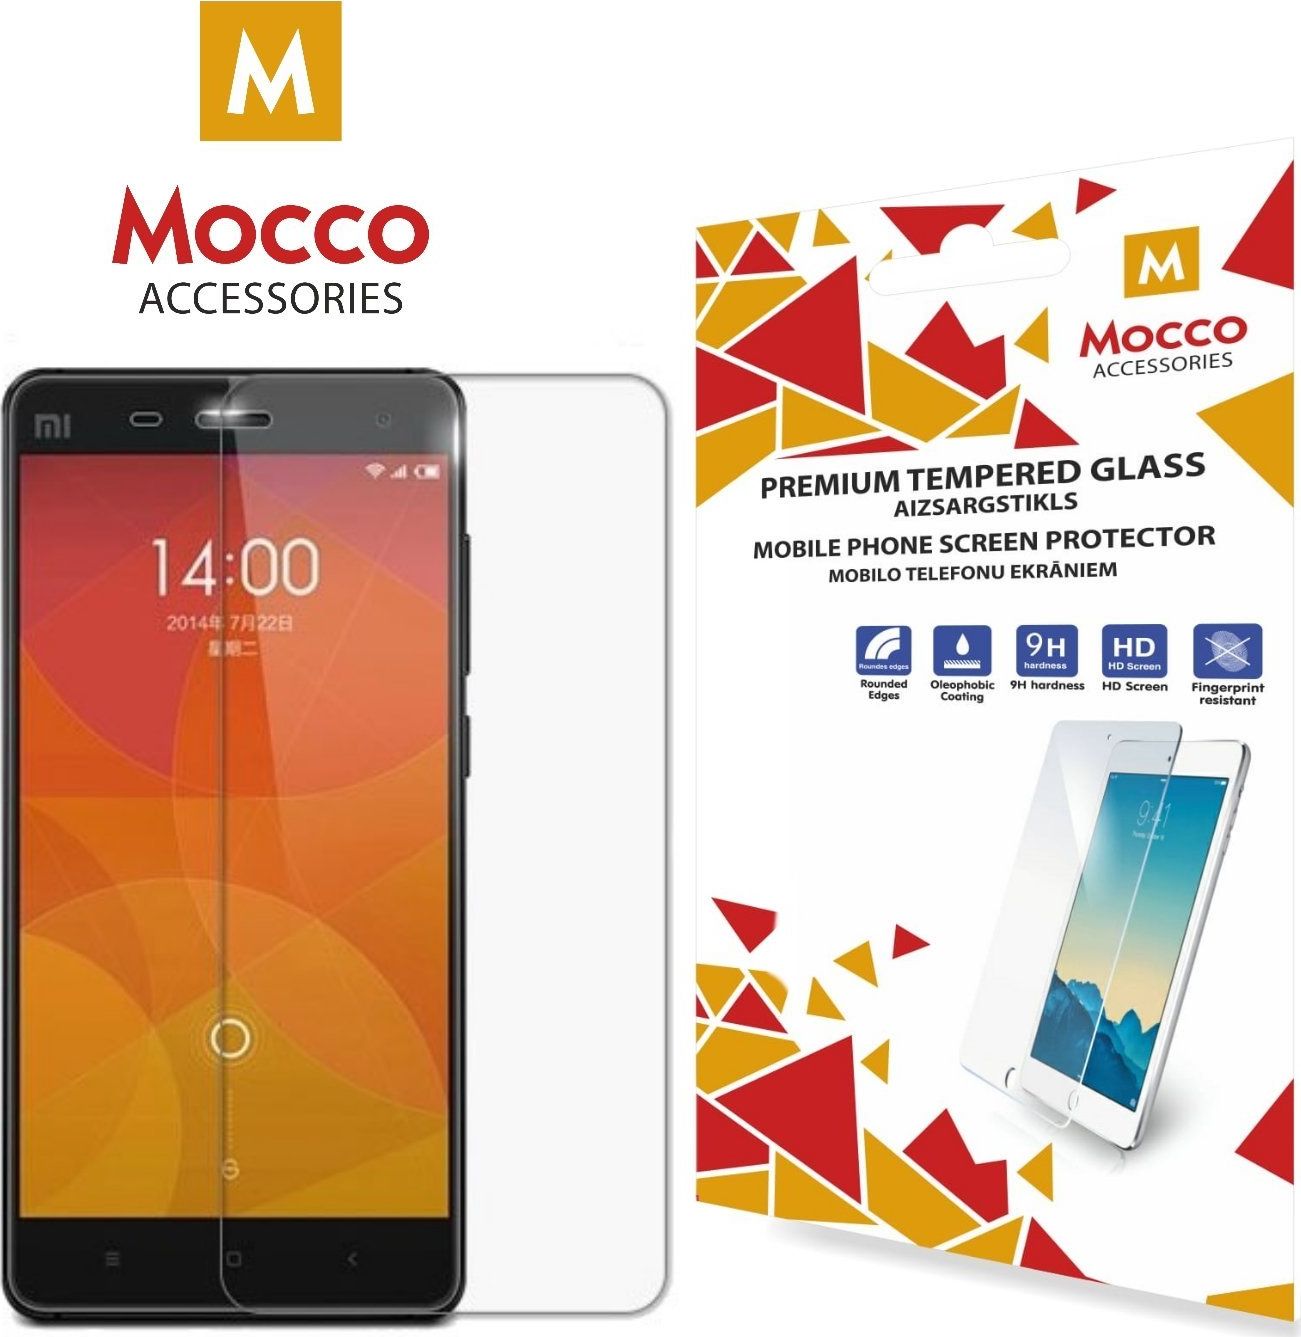 Mocco Tempered Glass Aizsargstikls Xiaomi Redmi S2 aizsardzība ekrānam mobilajiem telefoniem